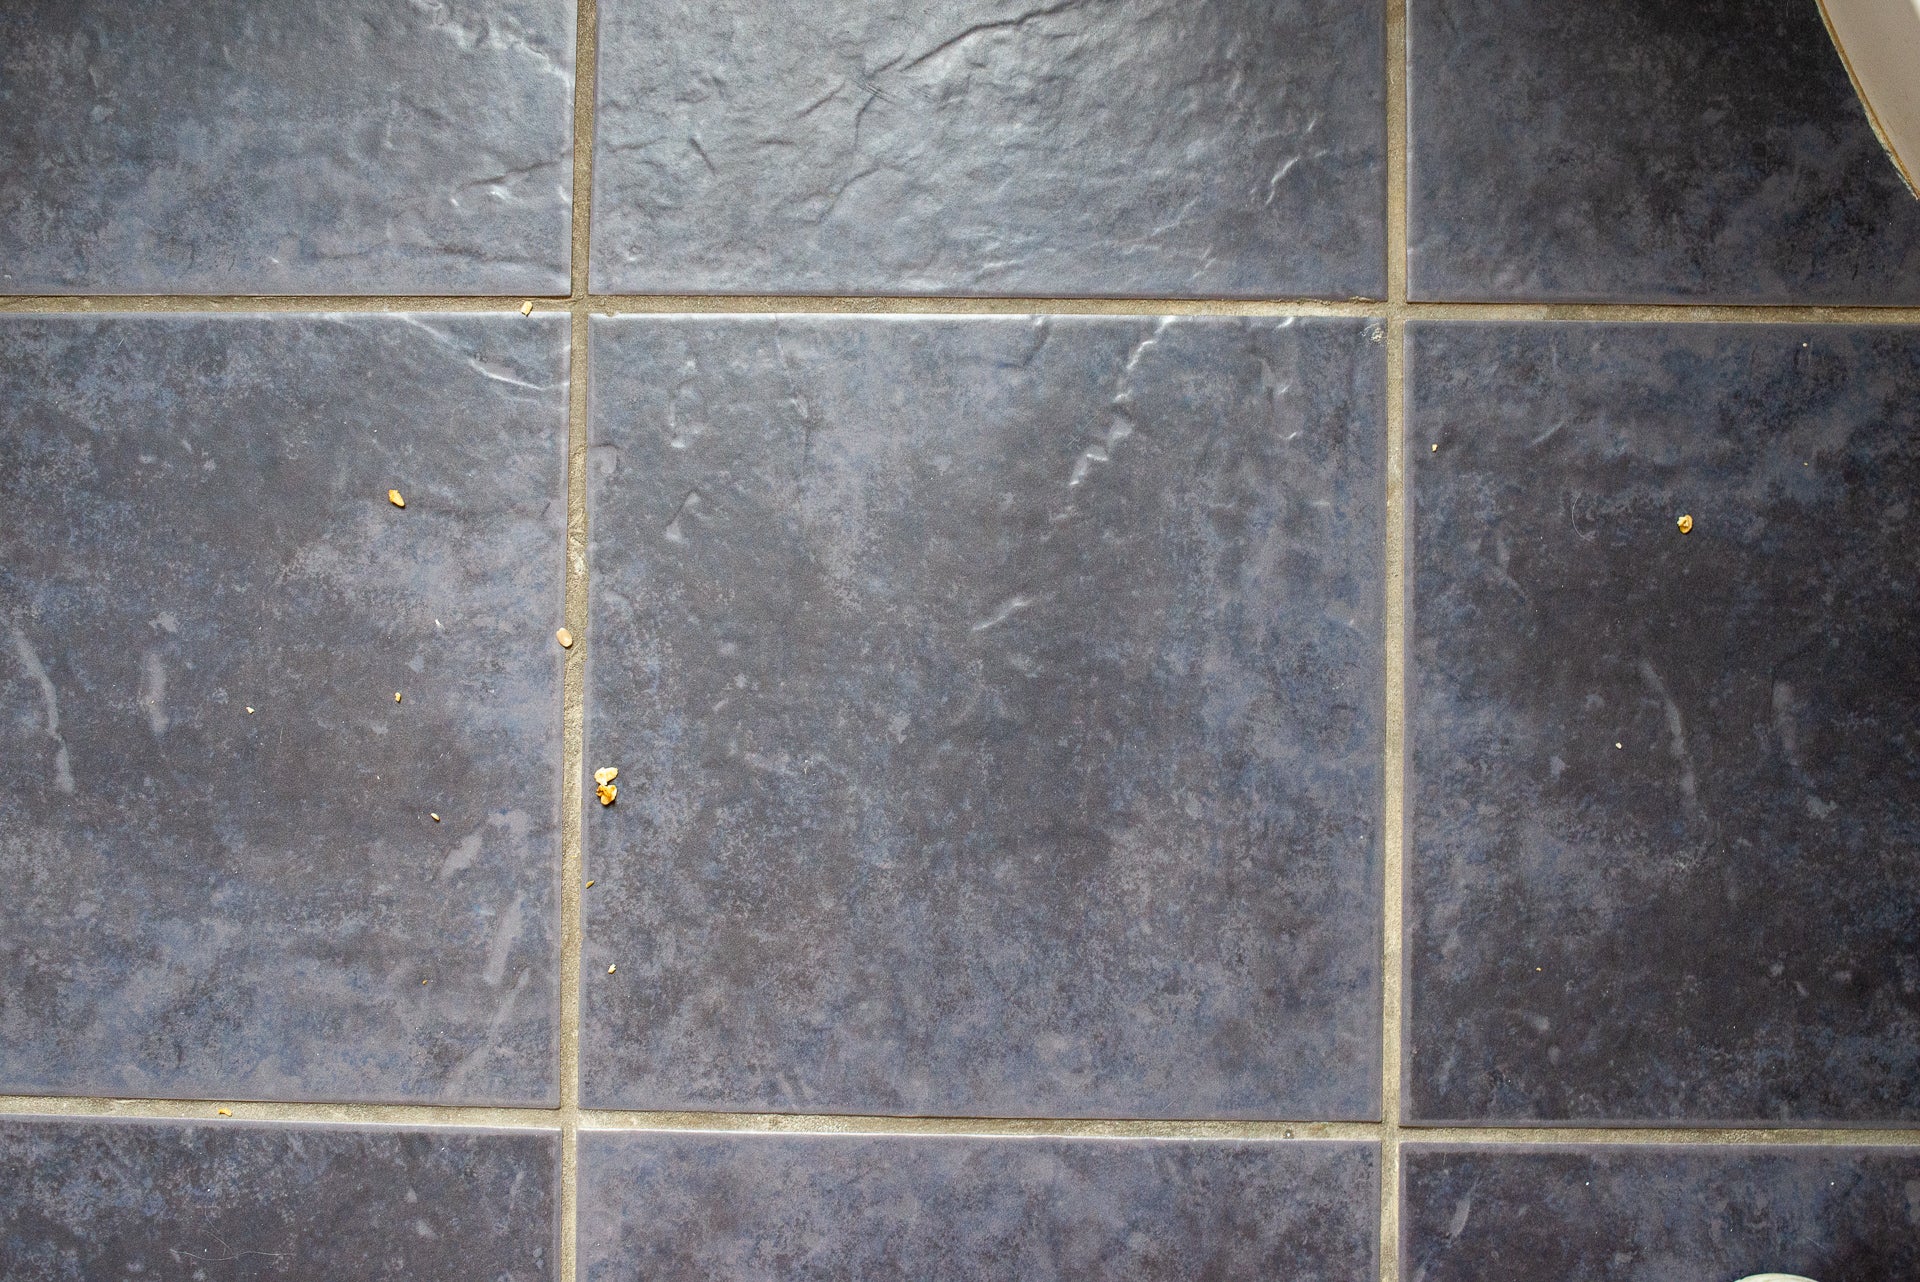 Dirty tiled floor before vacuuming with Vorwerk Kobold VK200.